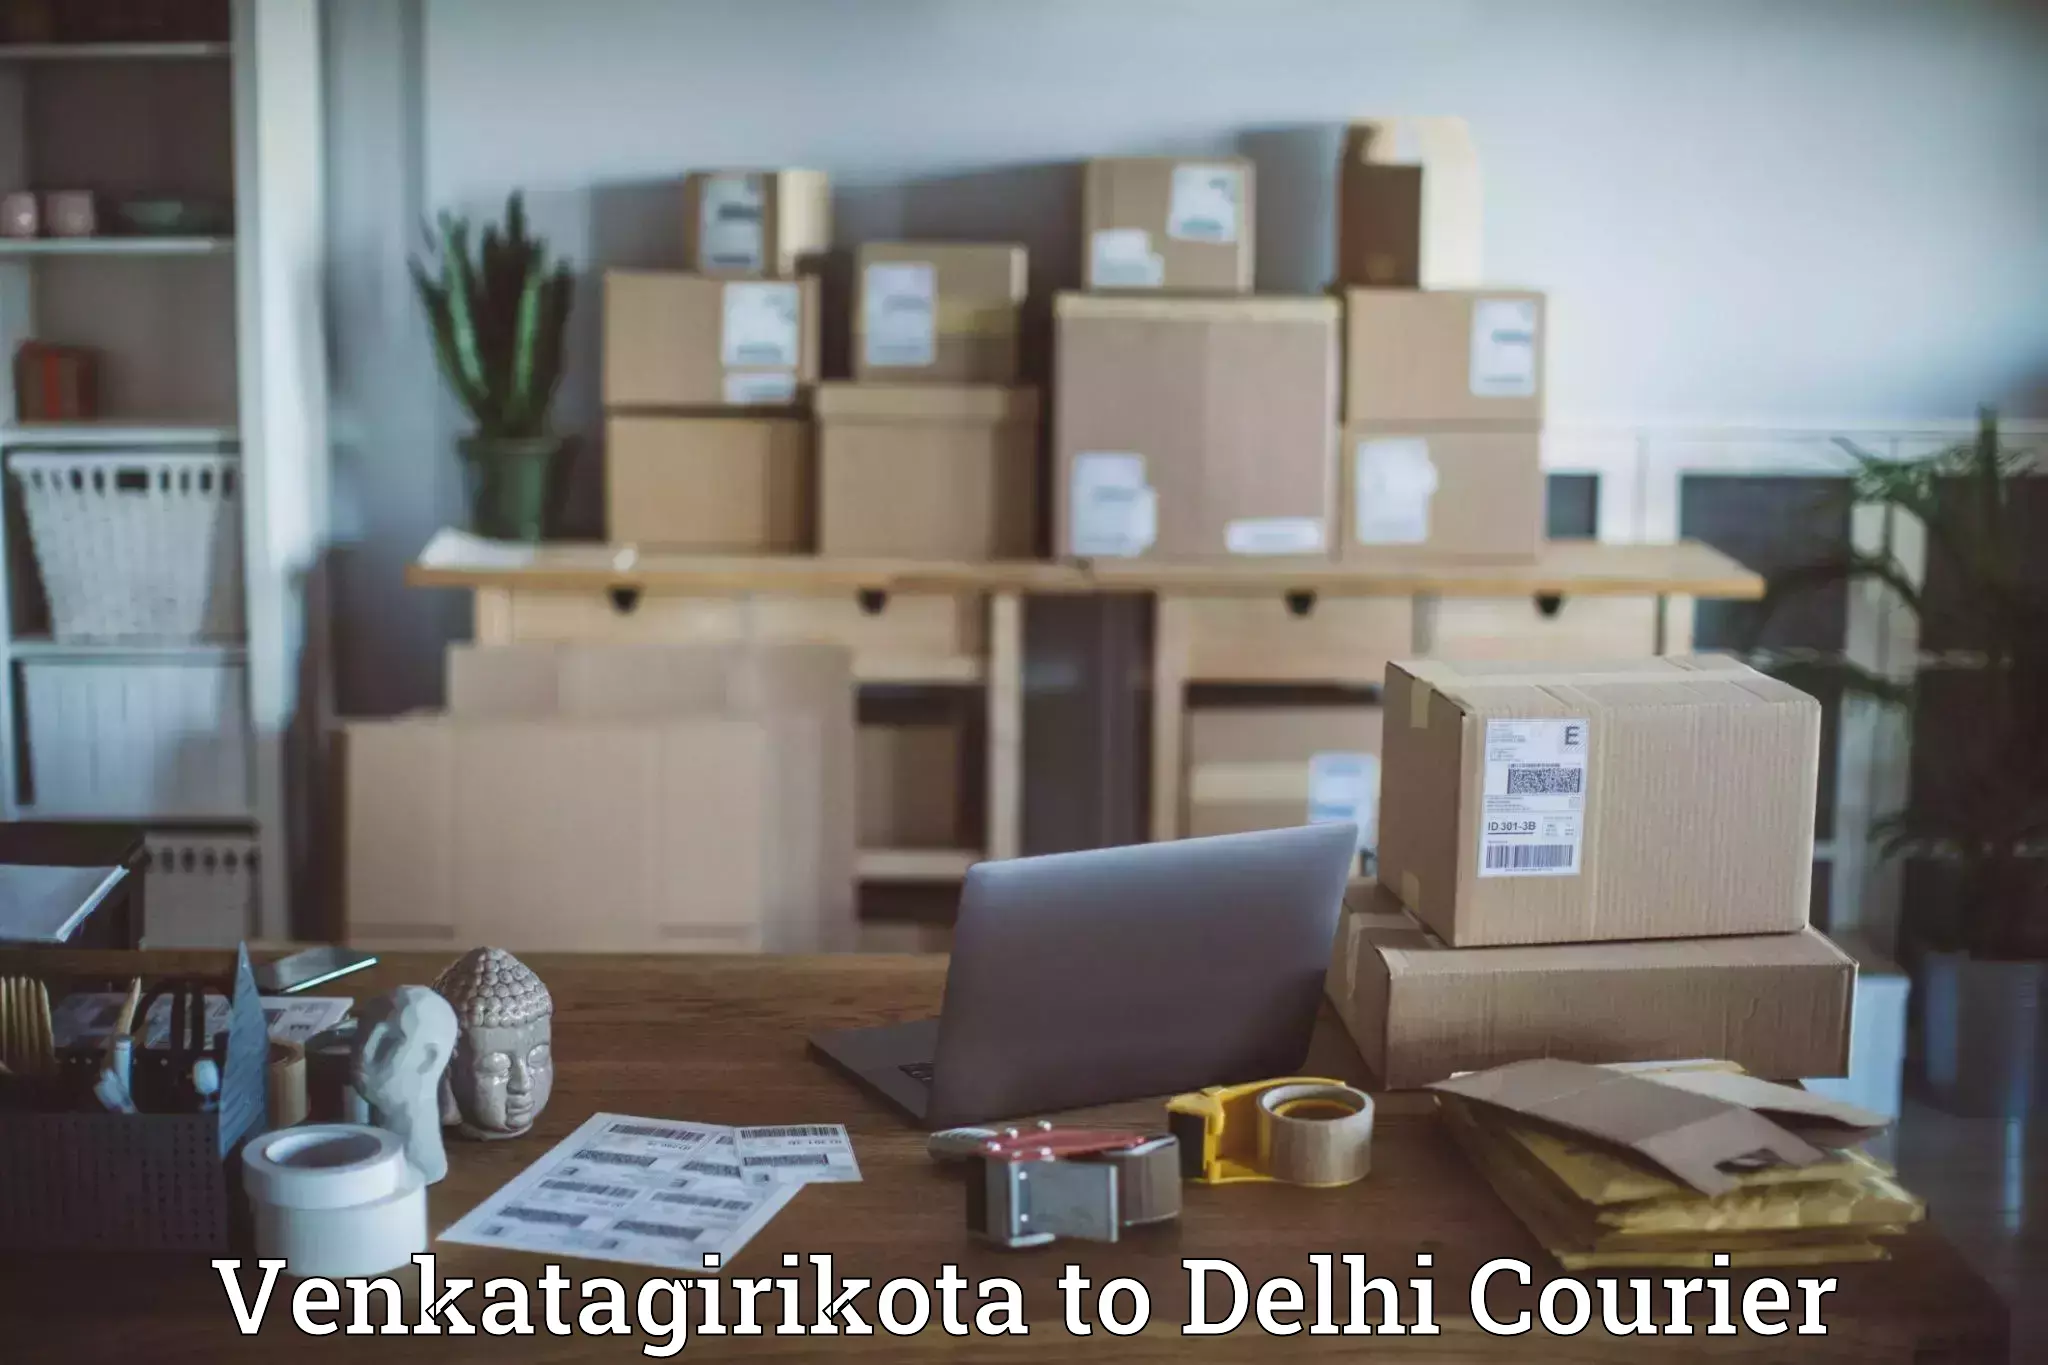 Return courier service Venkatagirikota to Delhi